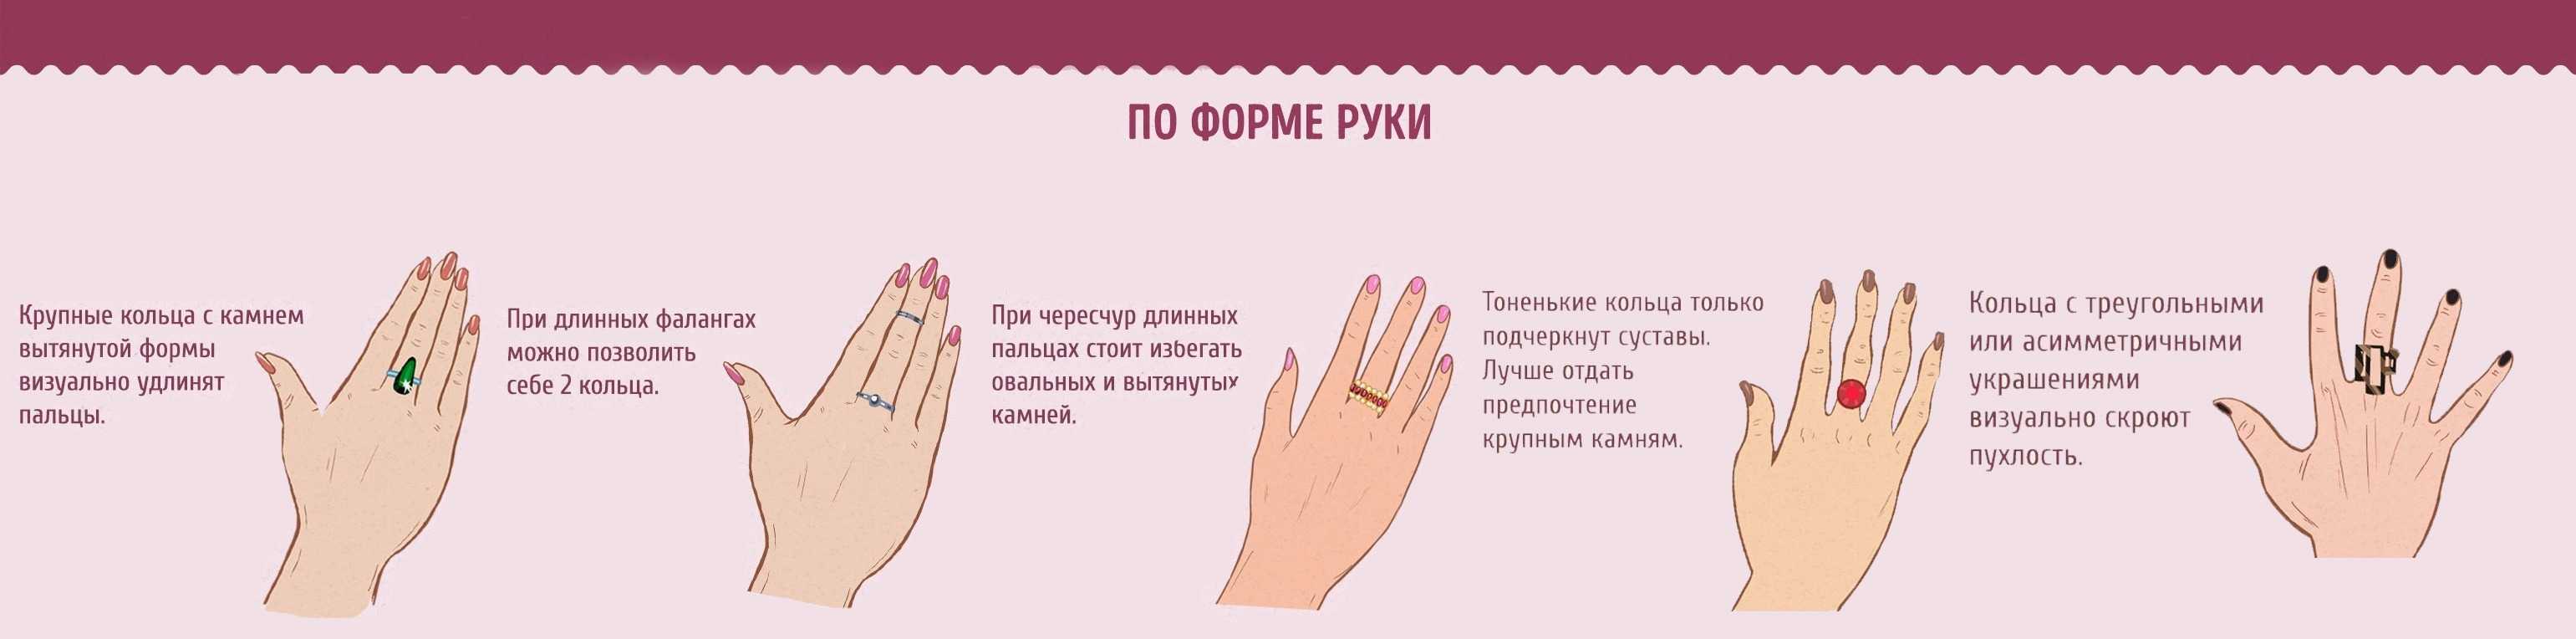 Что означают кольца на руках женщин и девушек — полезные материалы на корпоративном сайте «русские самоцветы»